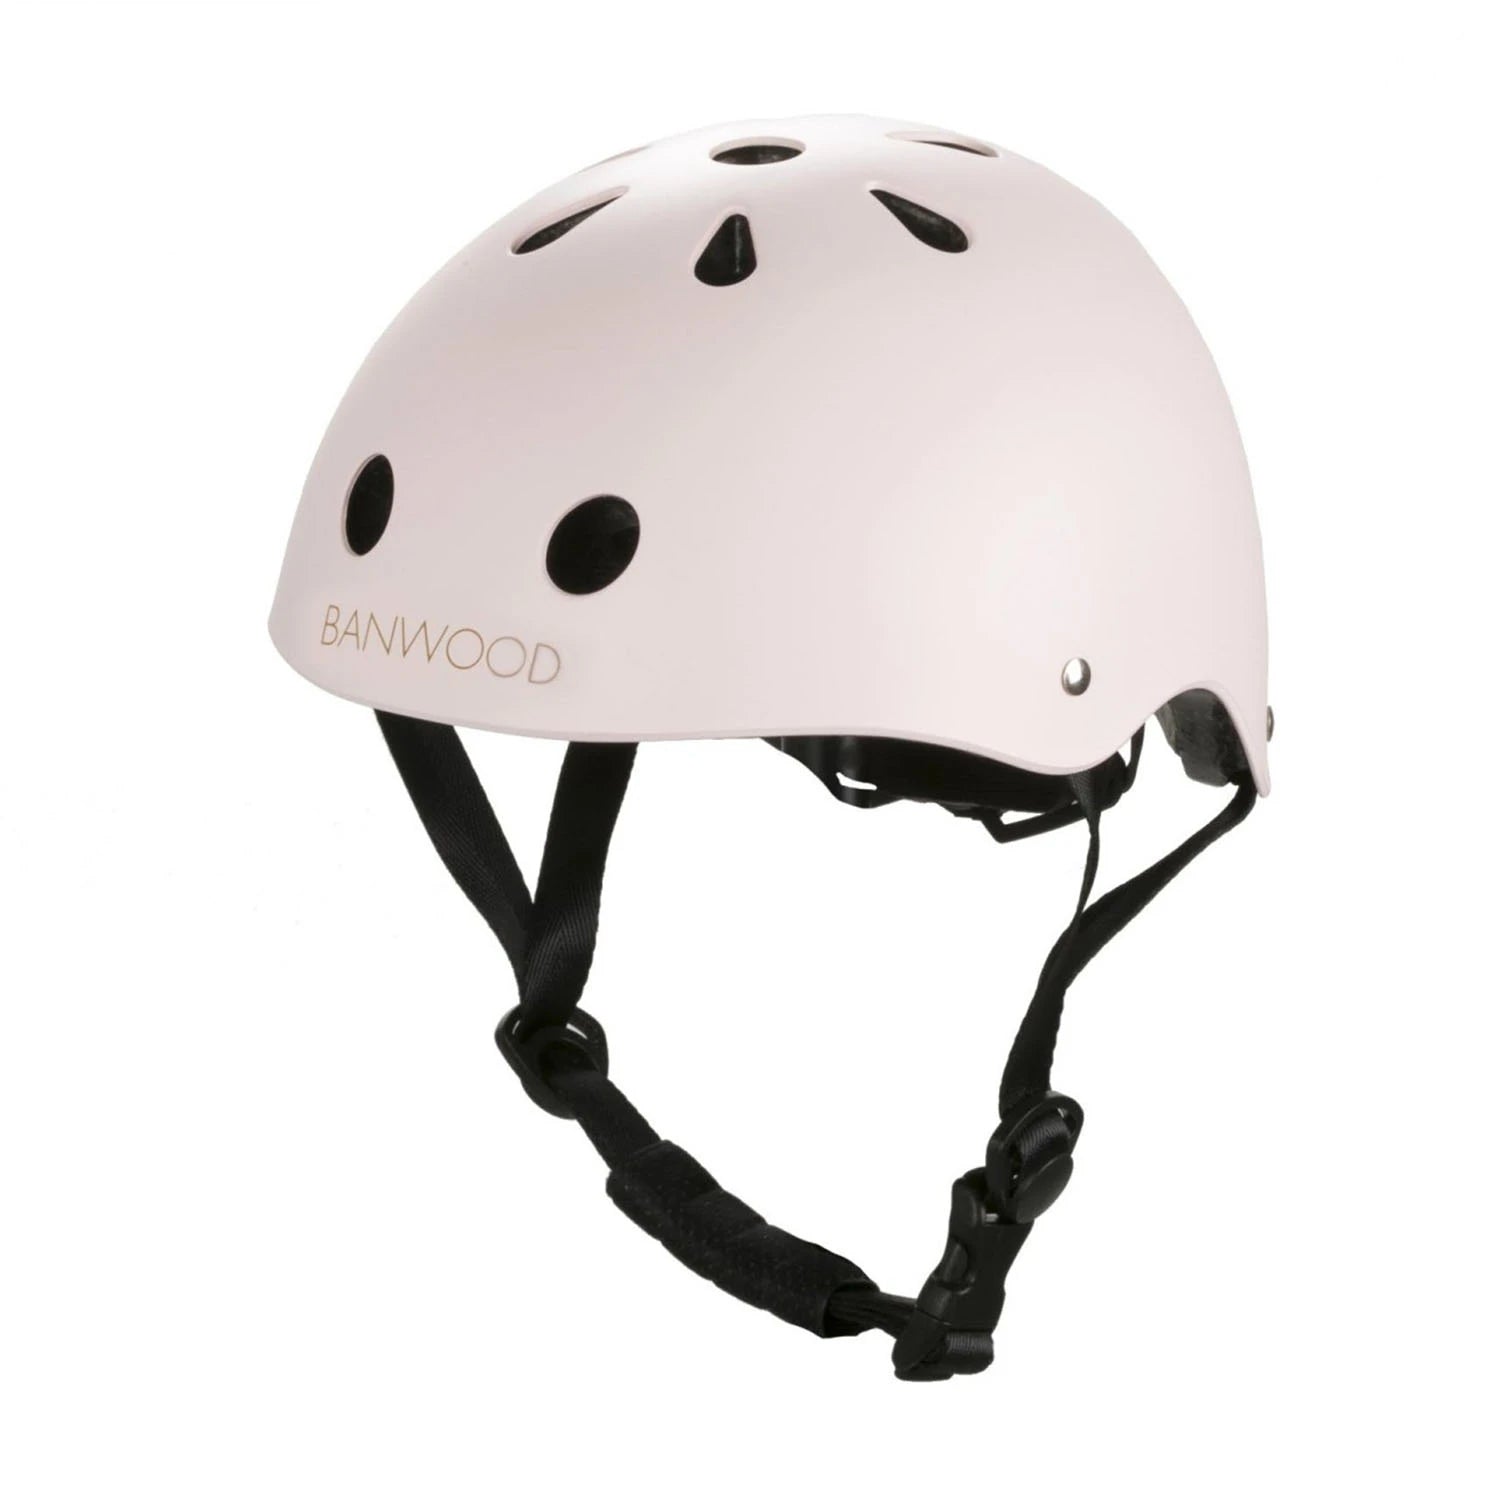 An image of Banwood Buy Banwood Classic Kids Bike Helmet – Safe & Stylish Pink